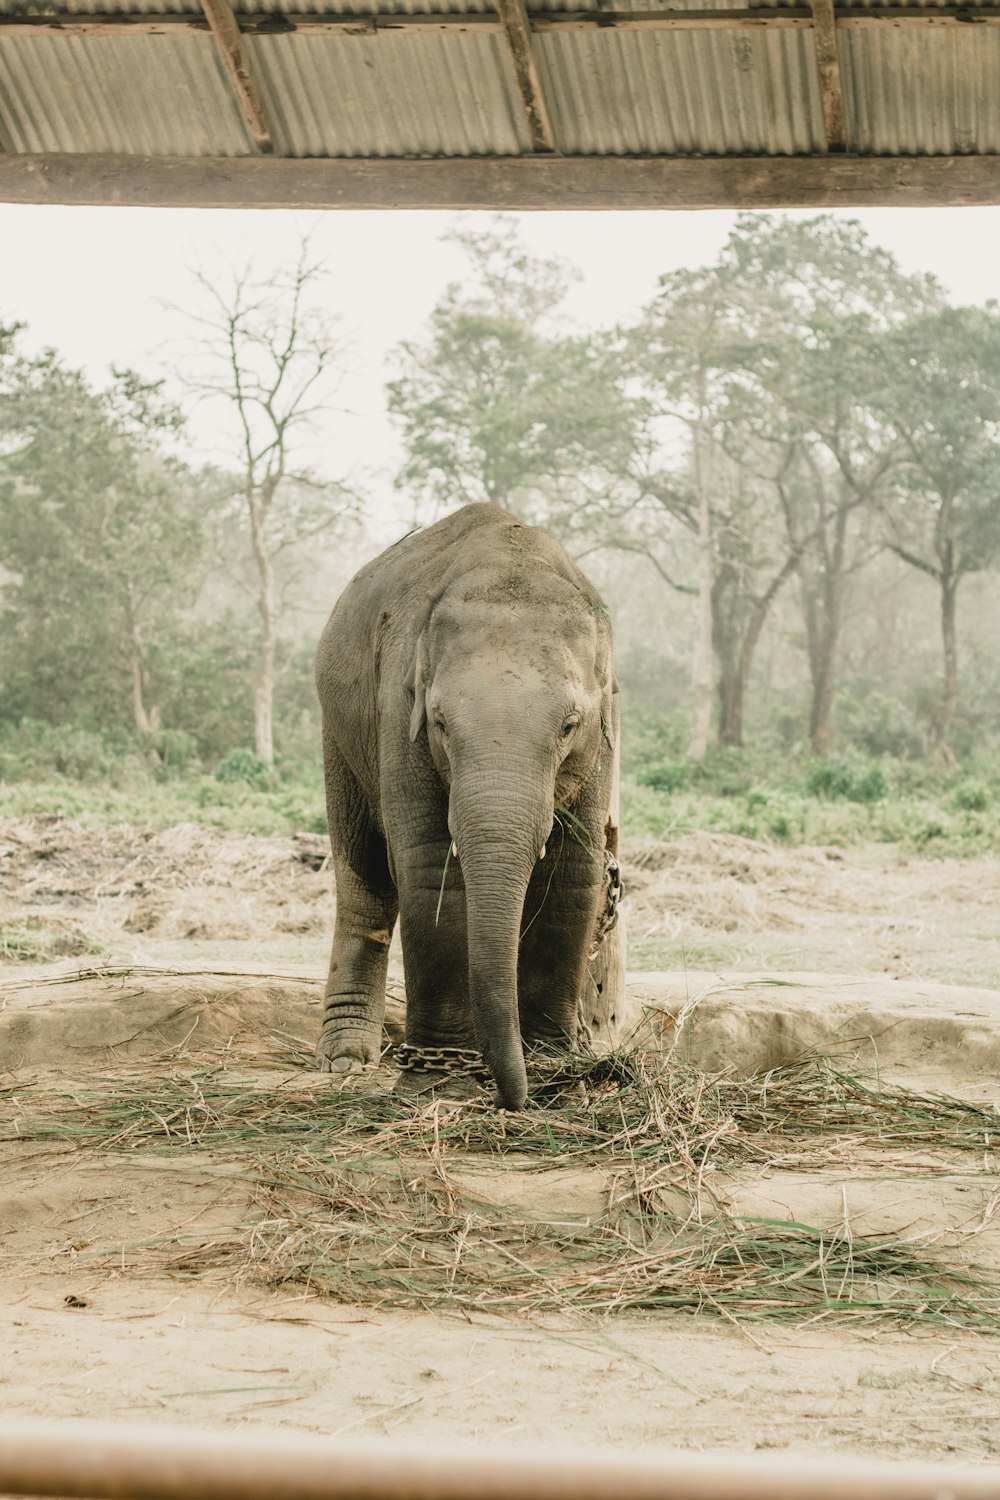 Un elefante parado bajo una estructura de madera comiendo hierba